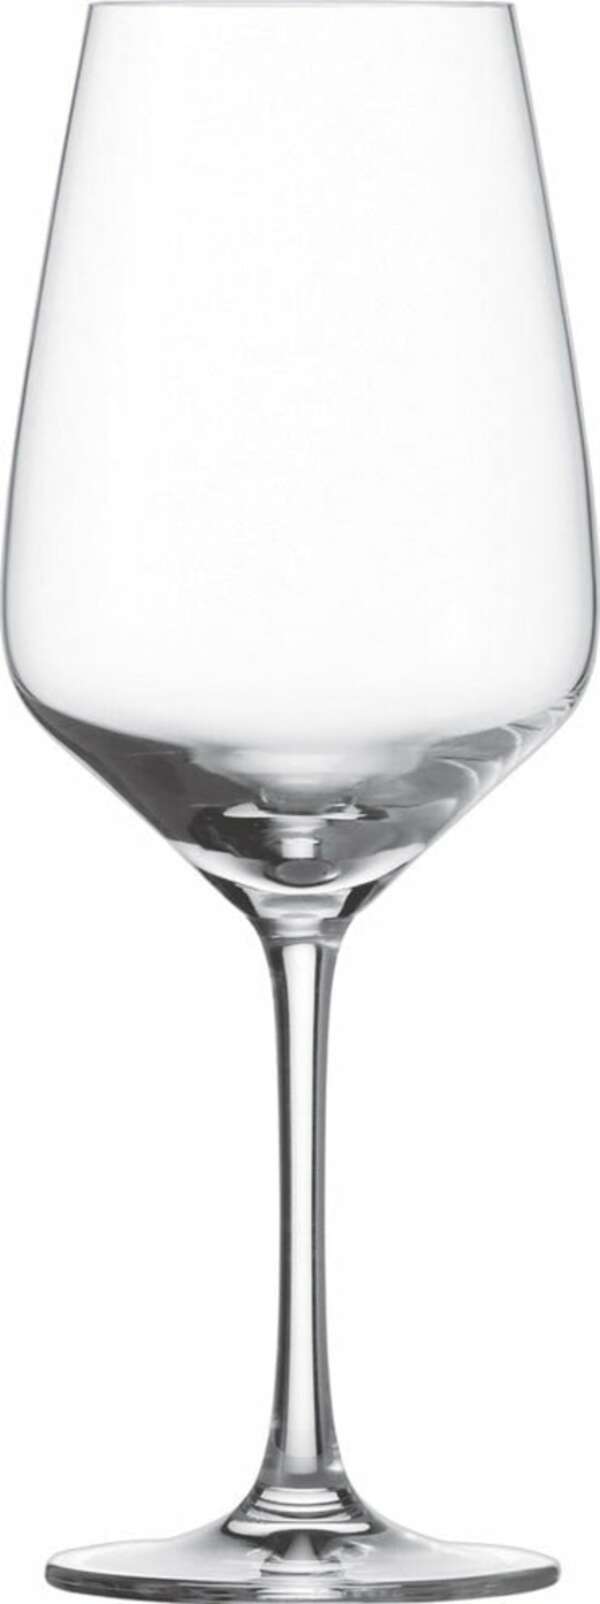 Bild 1 von SCHOTT ZWIESEL 6er Set Rotweinglas /Weinglas je 500 ml TASTE